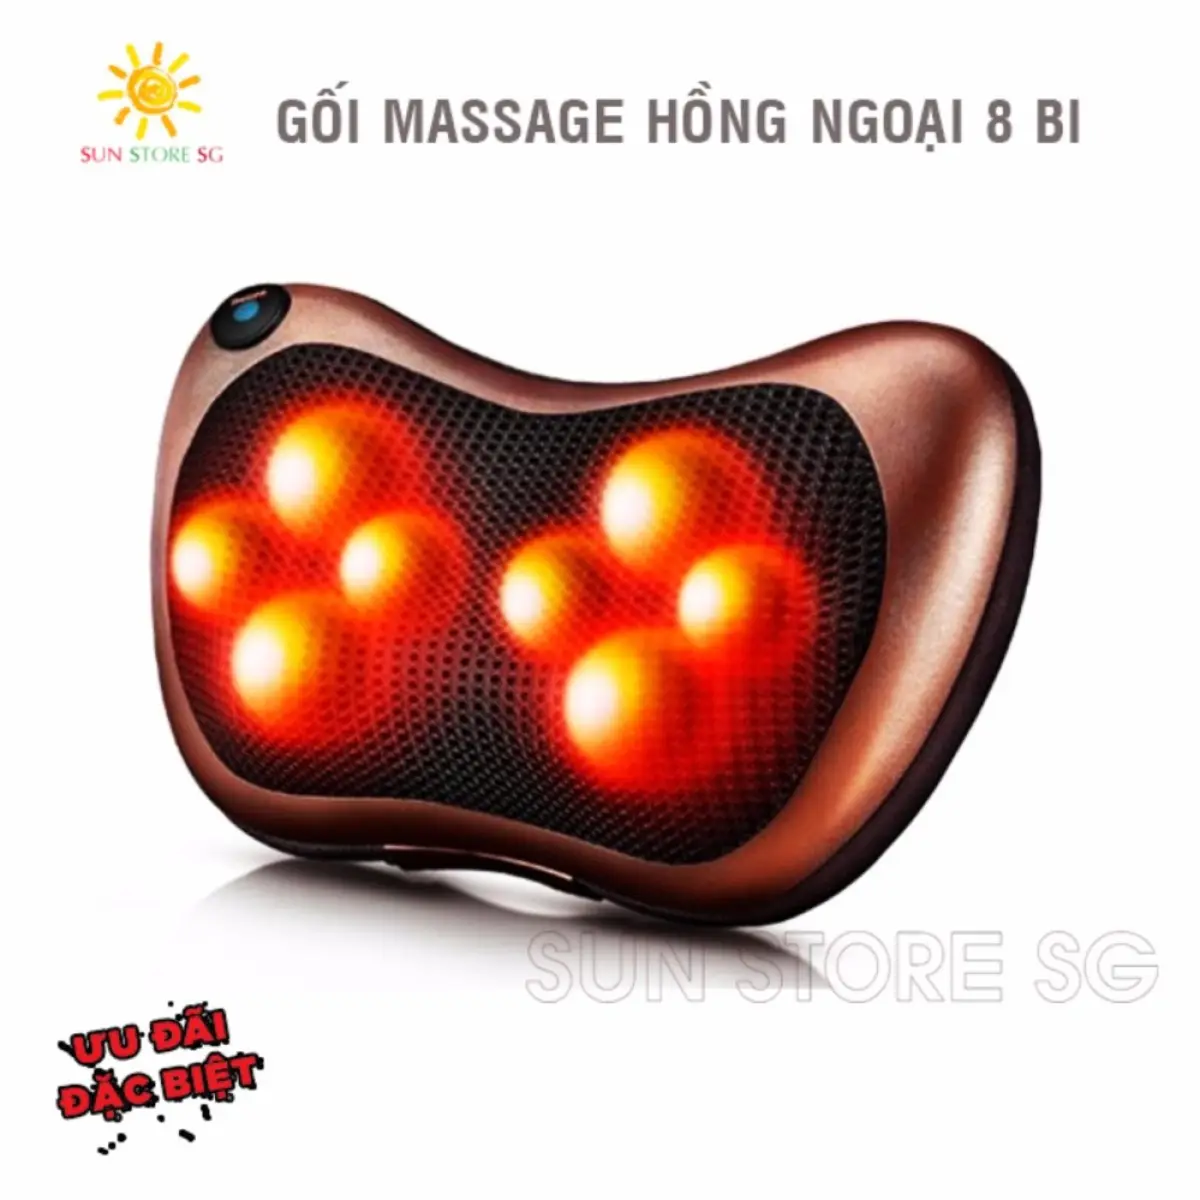 Goi Mat Xa Hong Ngoai - Gối Massage Hồng Ngoại 8 Bi Cao Cấp - Bảo Hành Uy Tín 1...